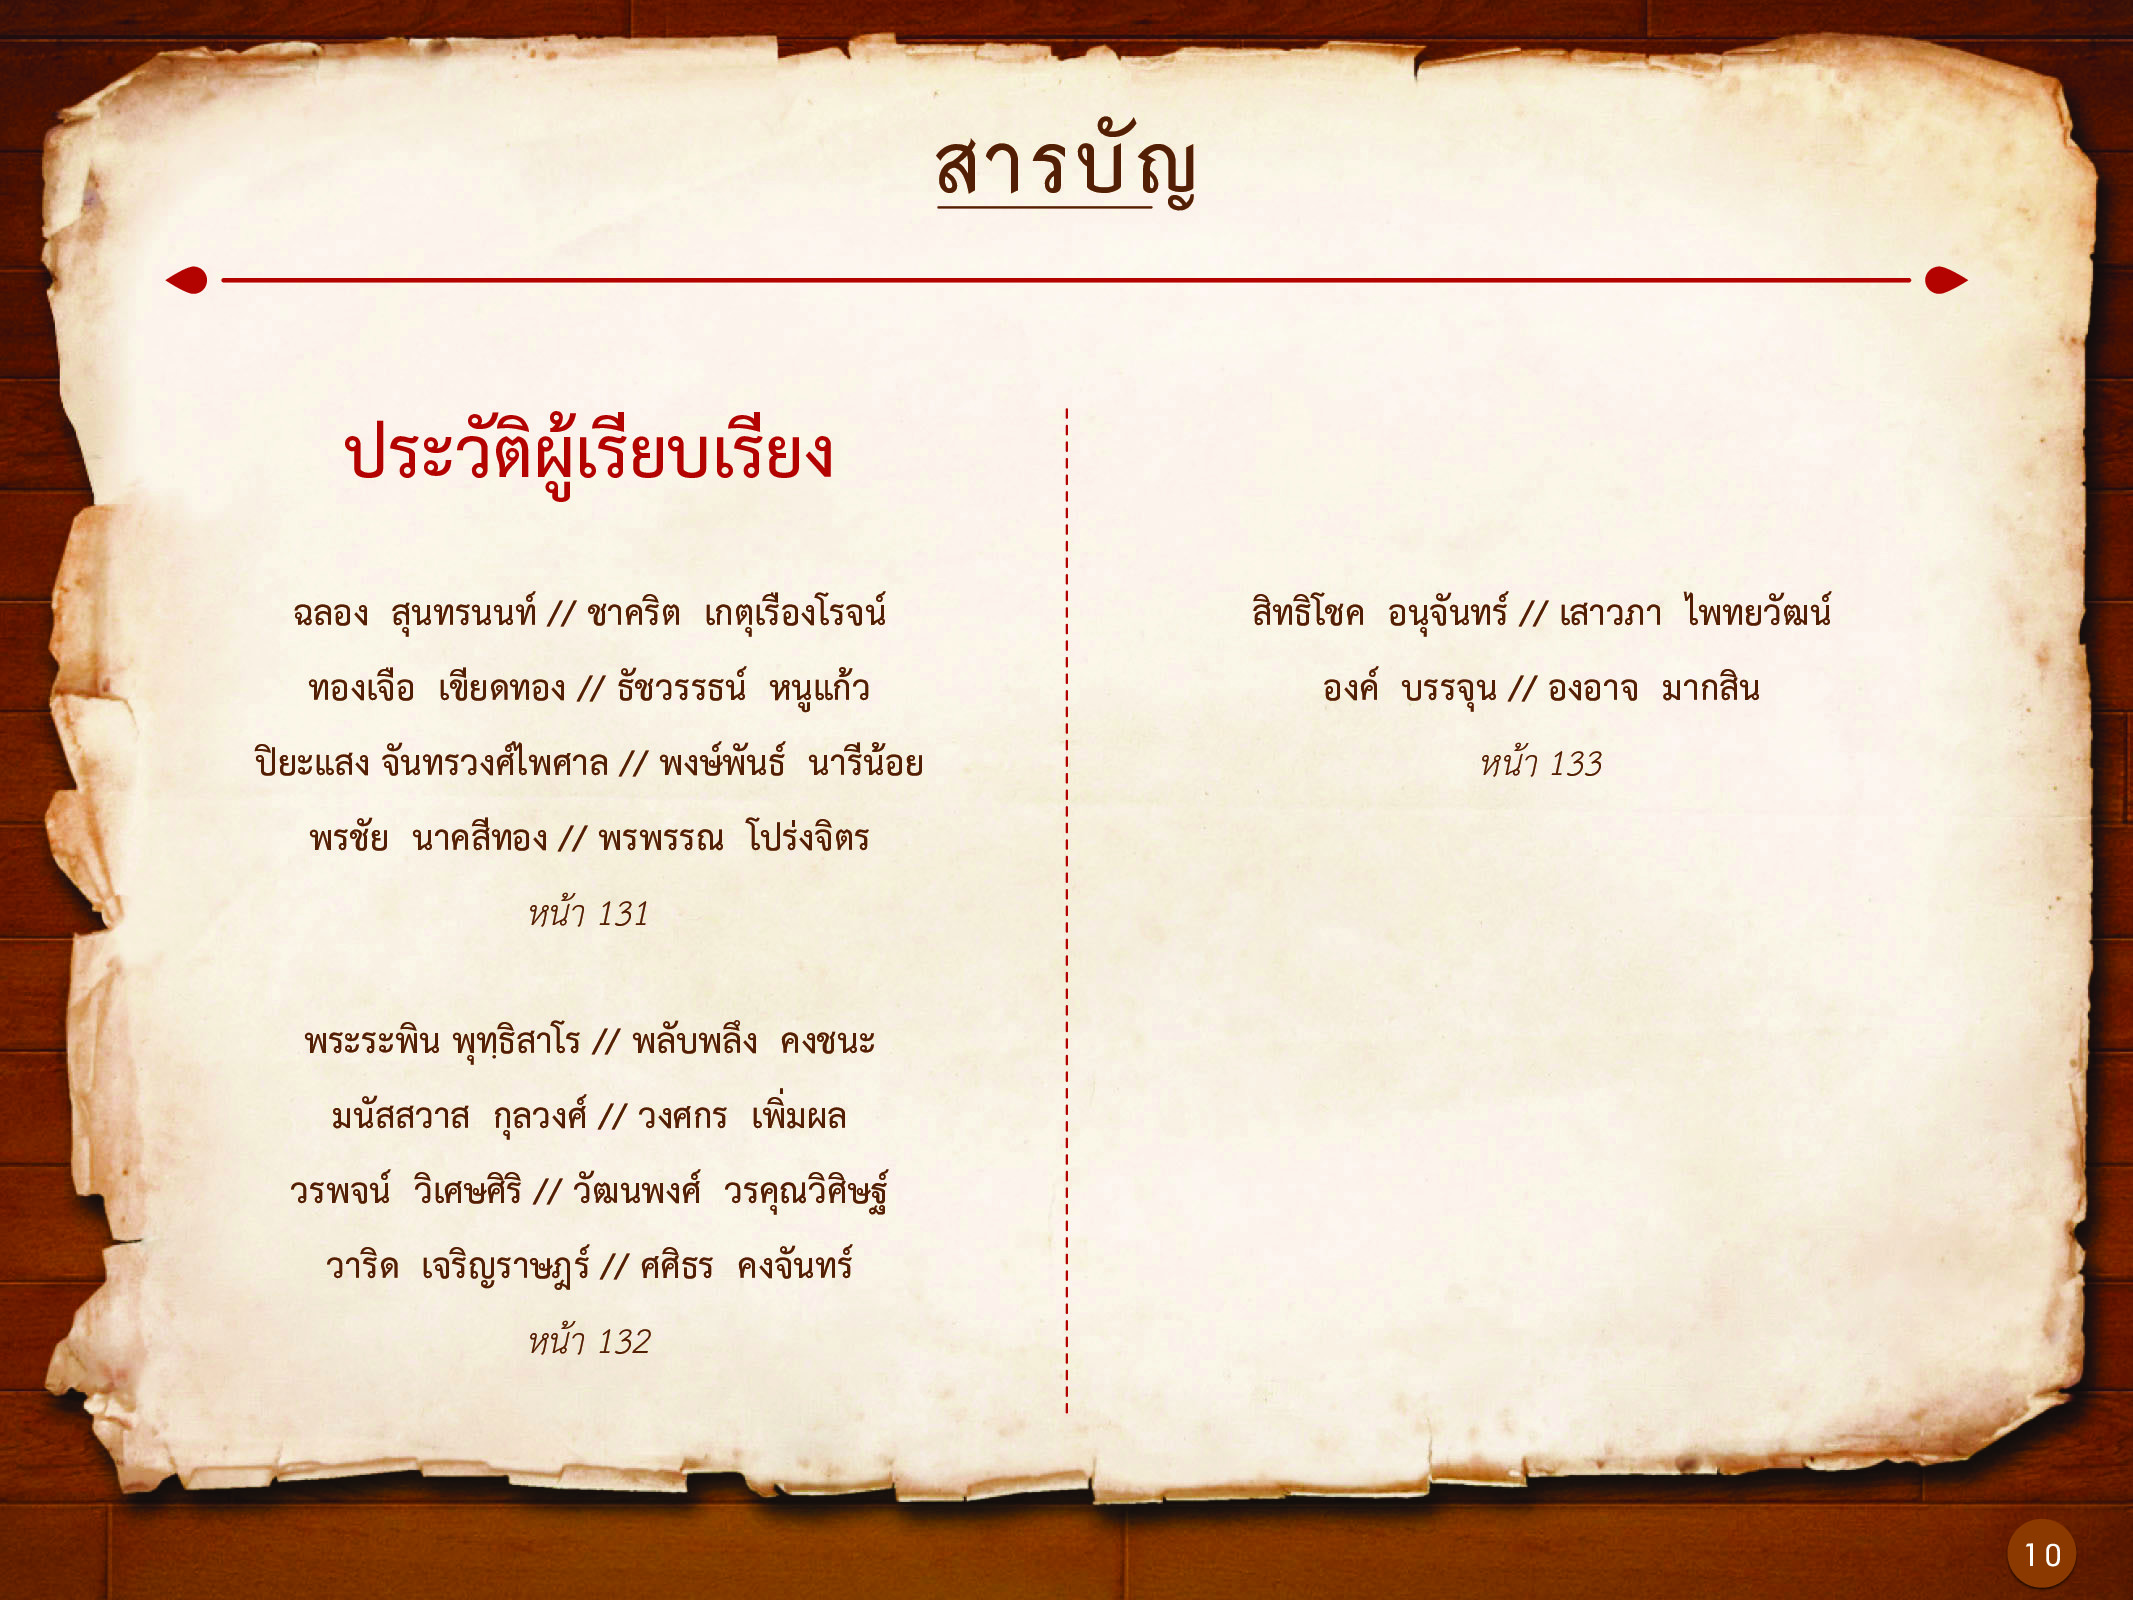 ประวัติศาสตร์กรุงธนบุรี ./images/history_dhonburi/10.jpg